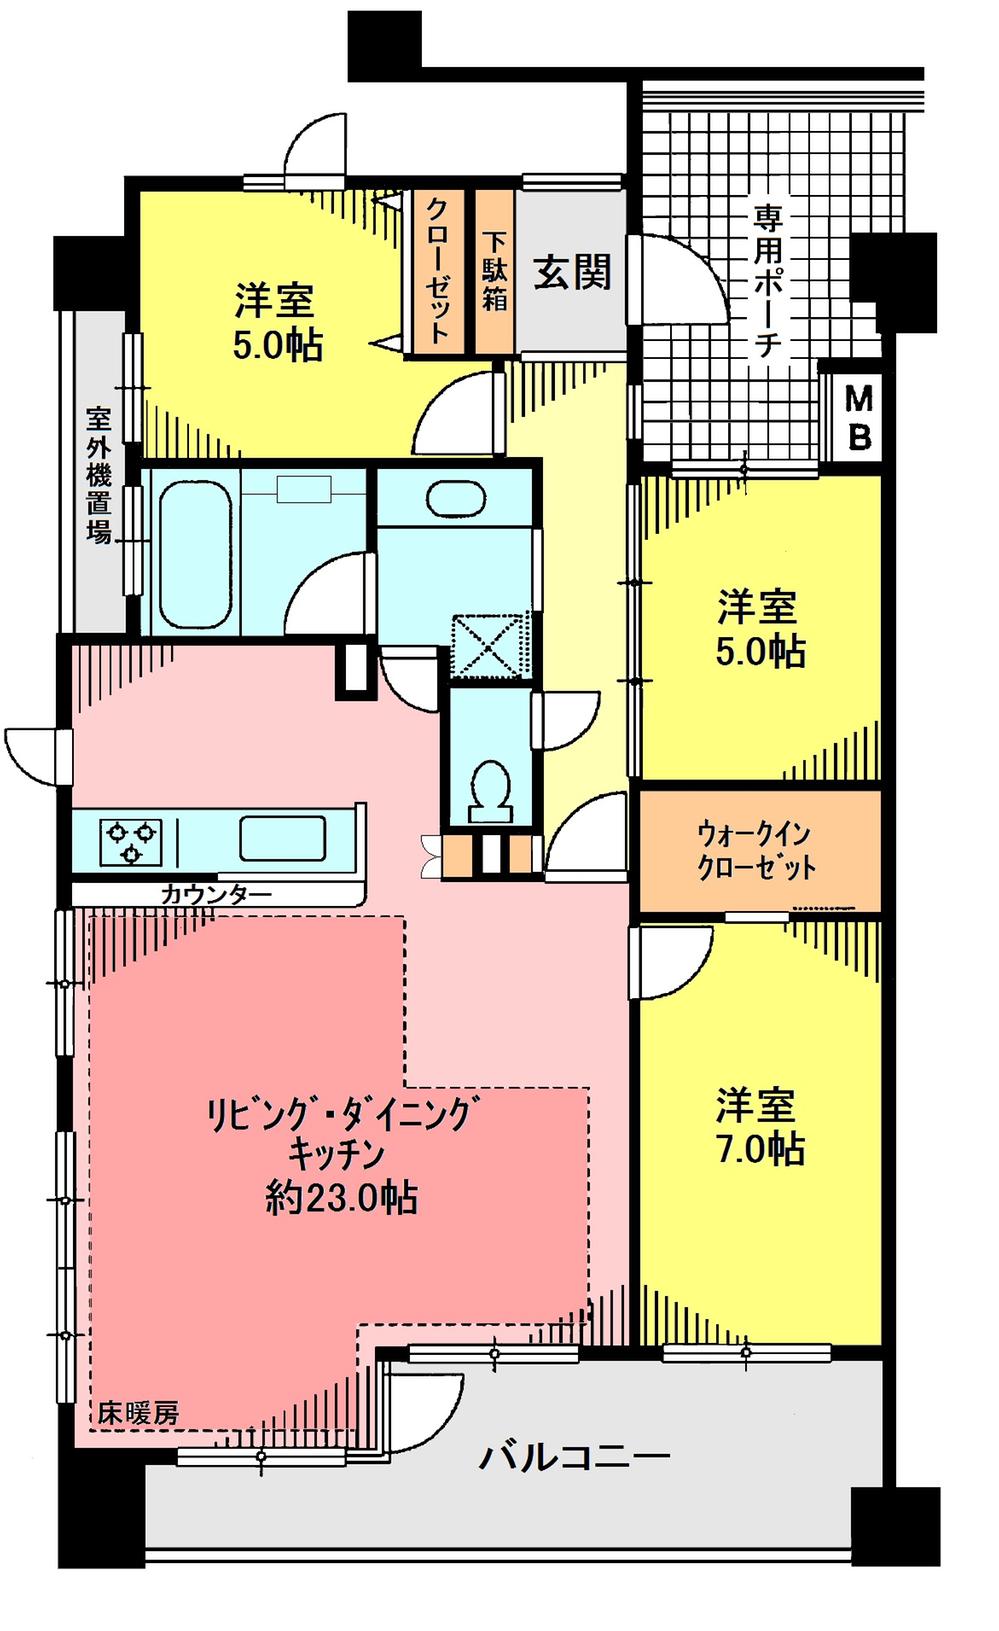 Floor plan. 3LDK, Price 40,800,000 yen, Occupied area 87.51 sq m , Balcony area 13.1 sq m floor plan